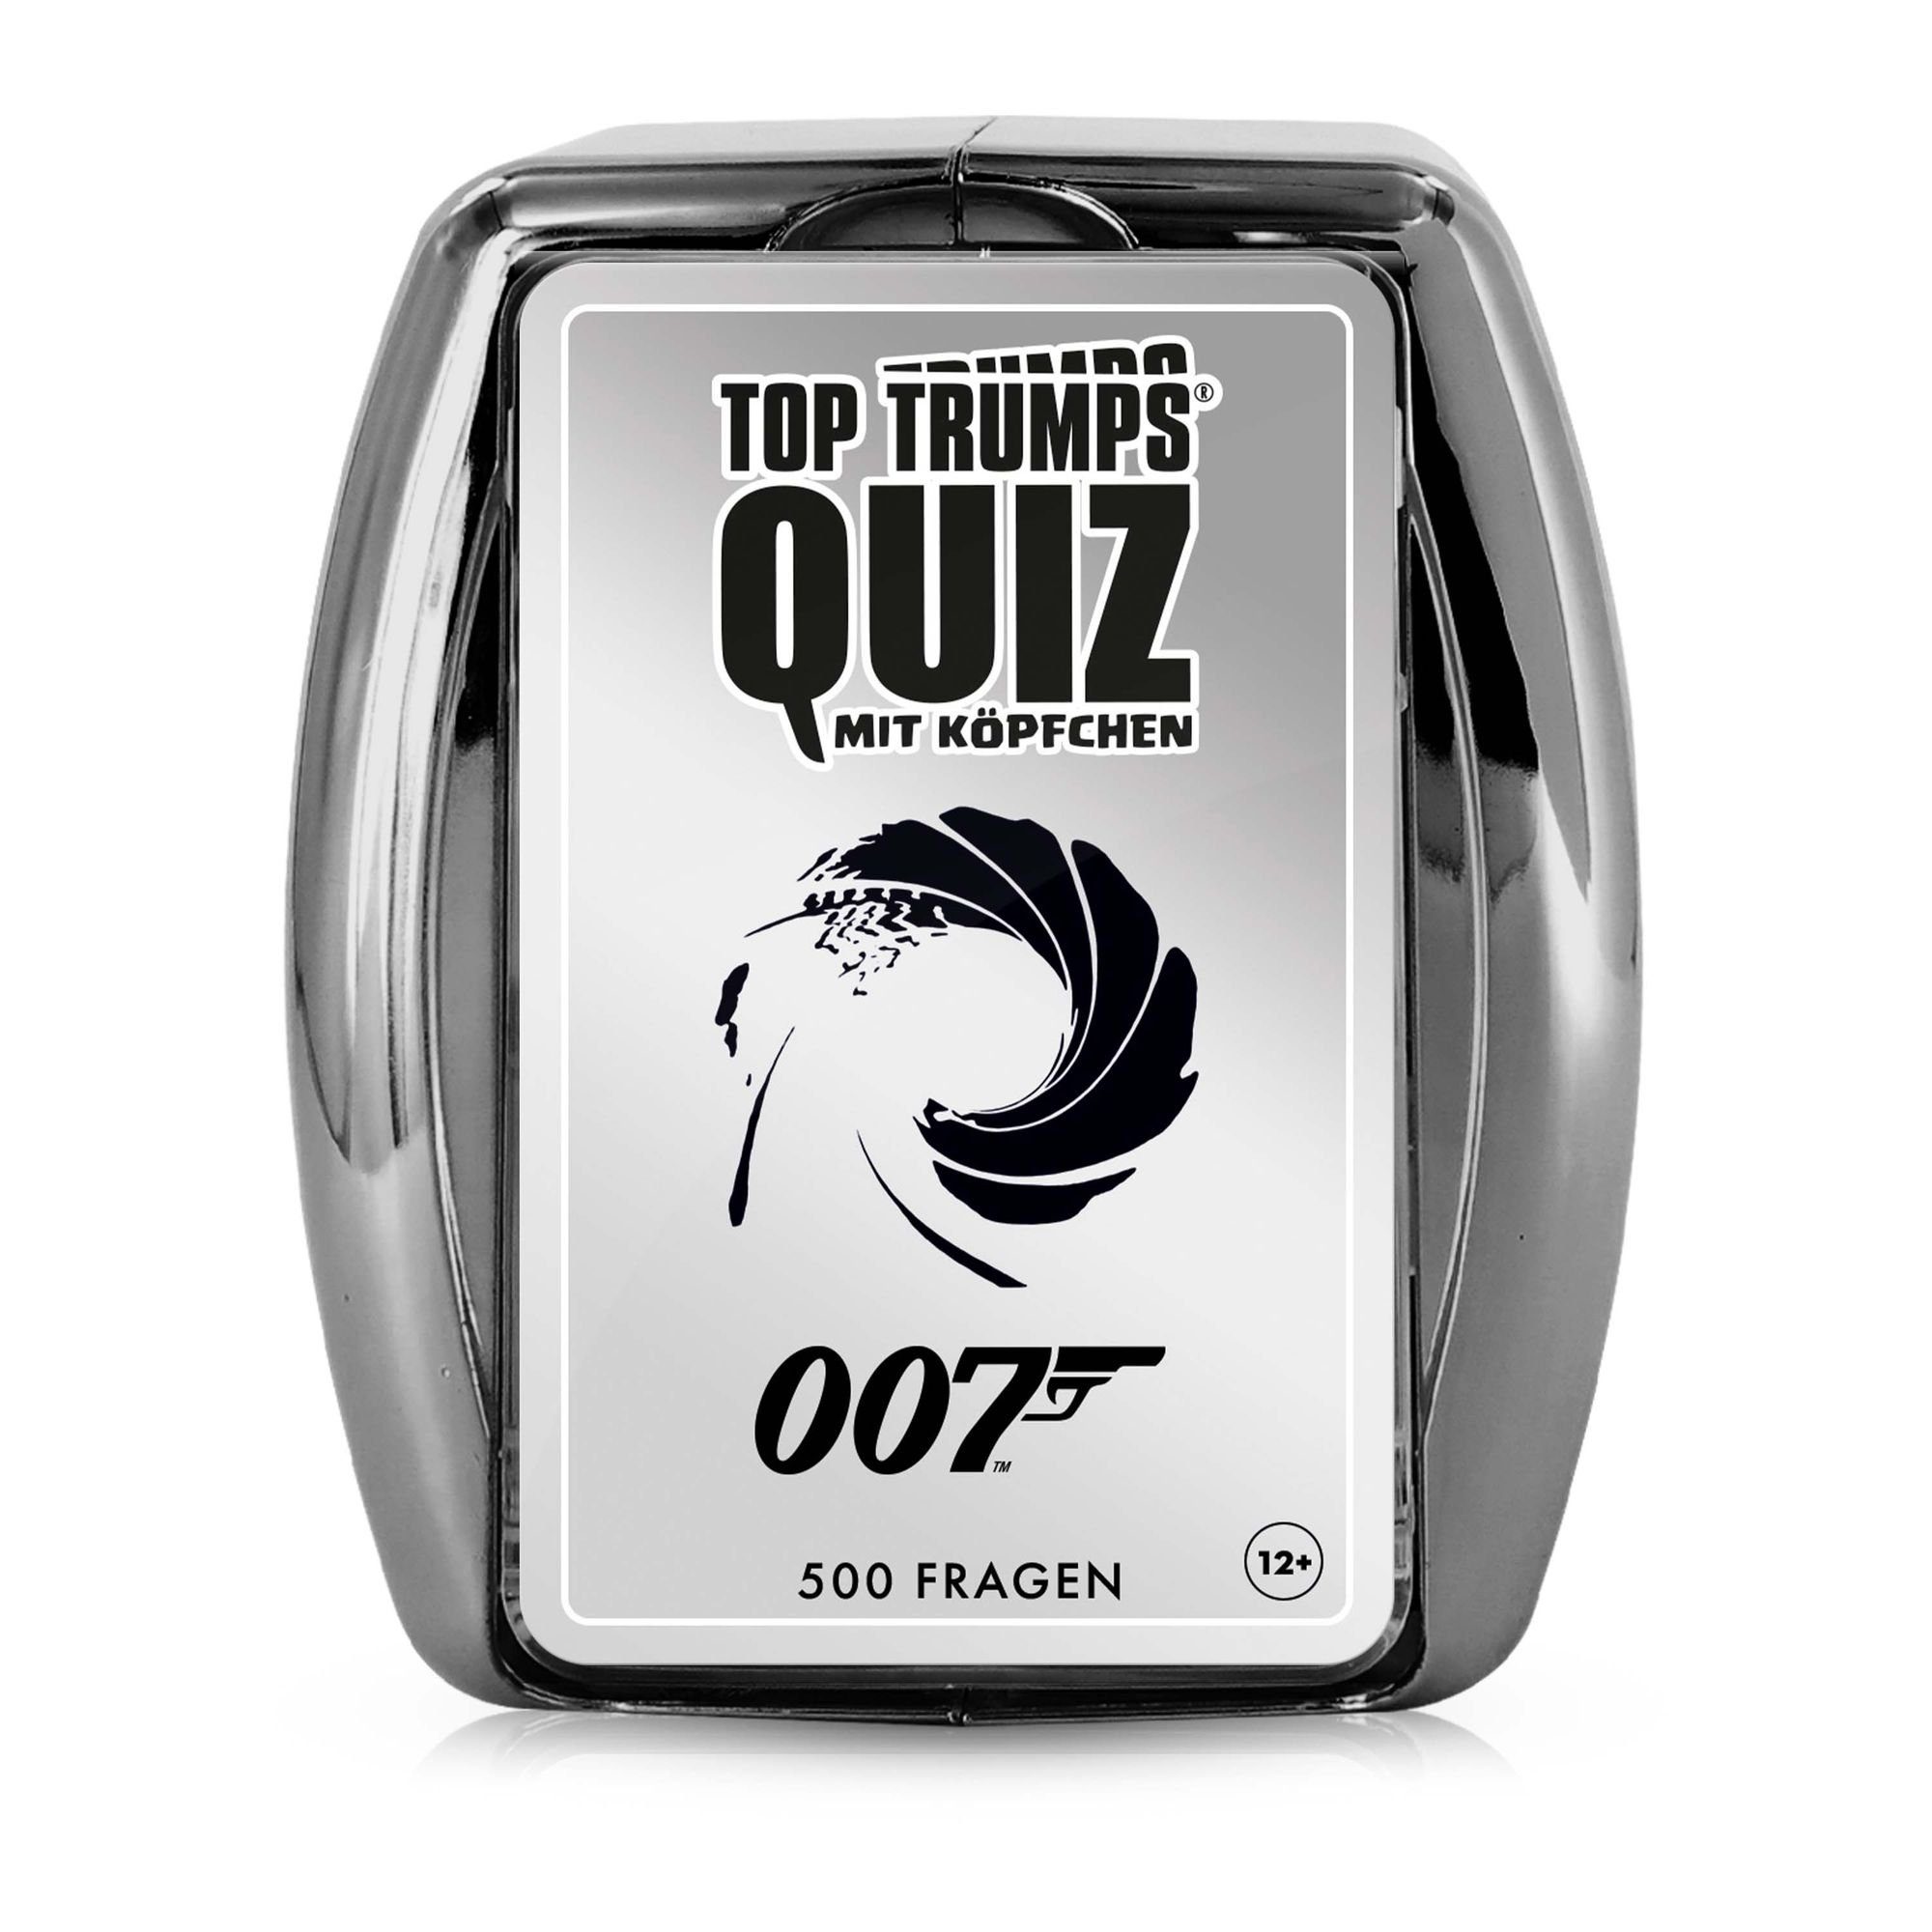 Winning Moves Spiel, Wissenspiel Top Trumps Quiz - James Bond